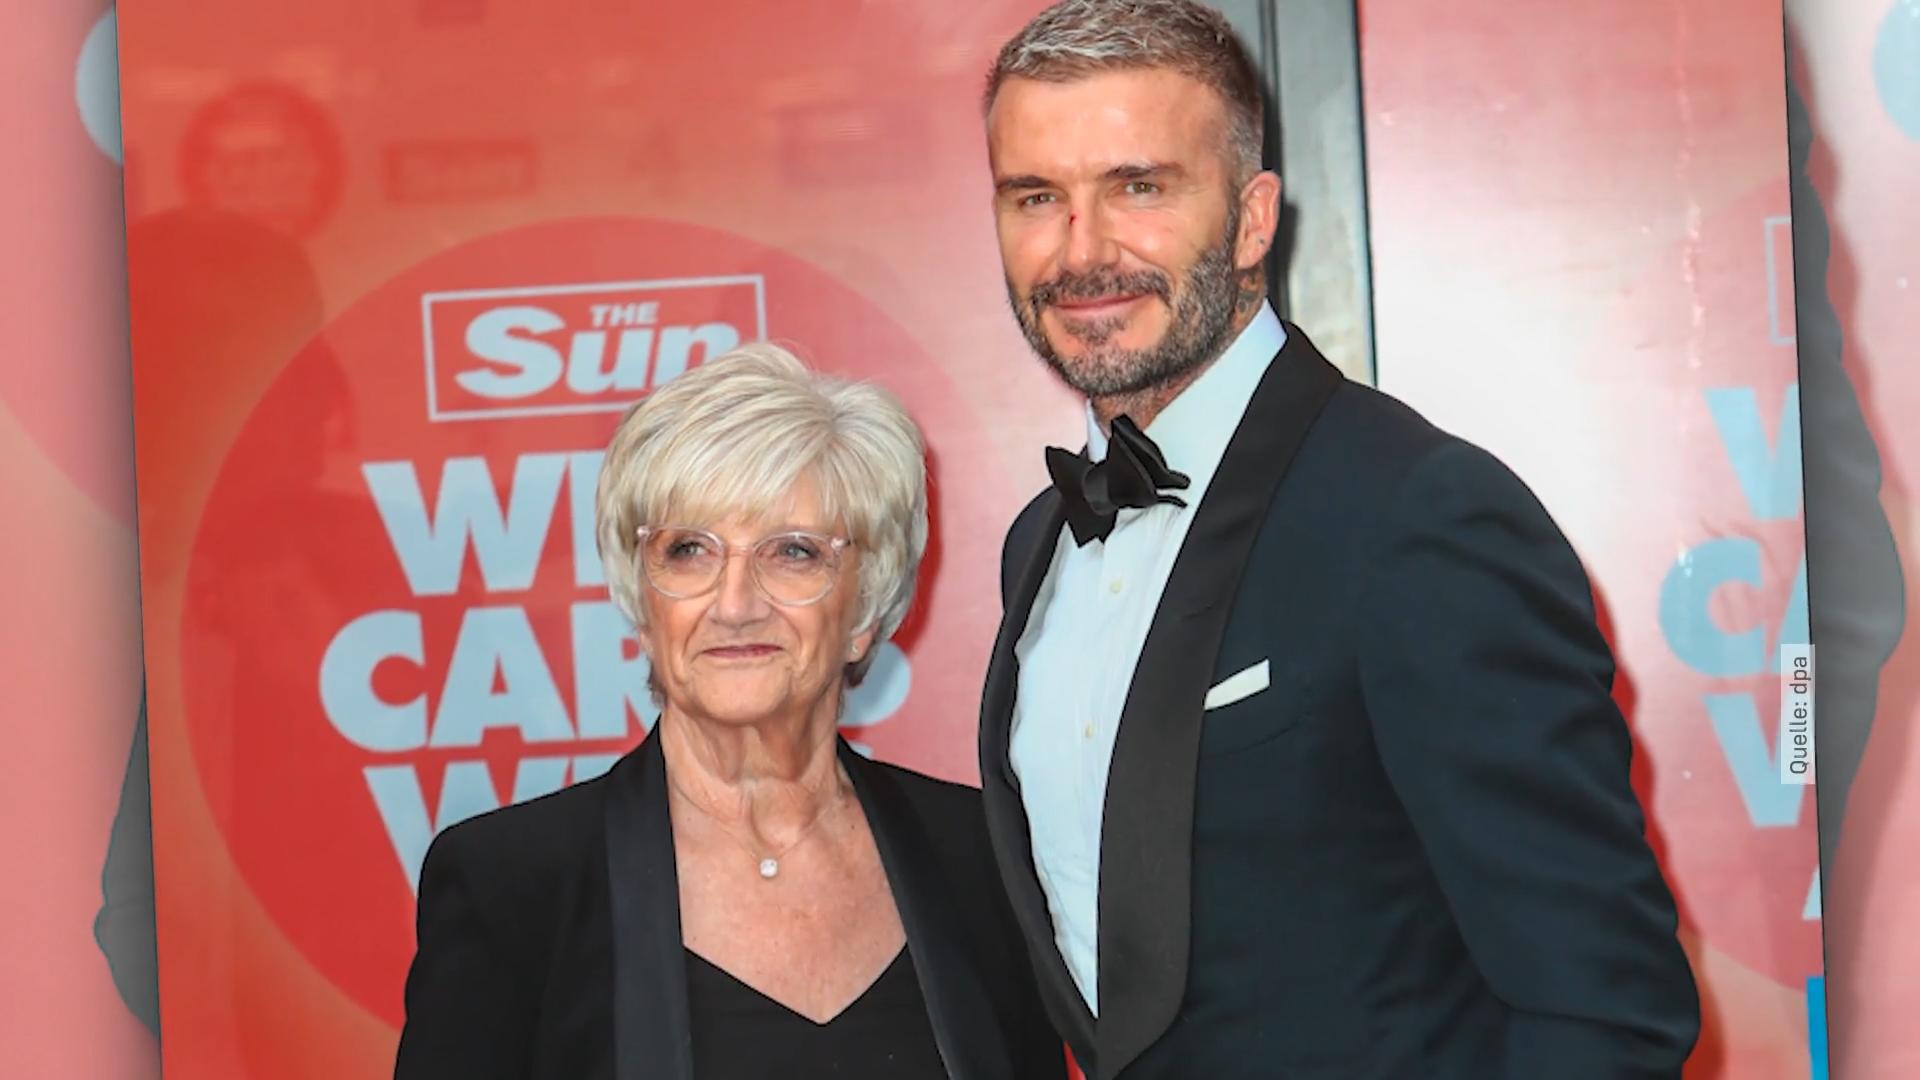 Davids Mama mit Beckham im Rampenlicht Süßes Date beim Sun-Award